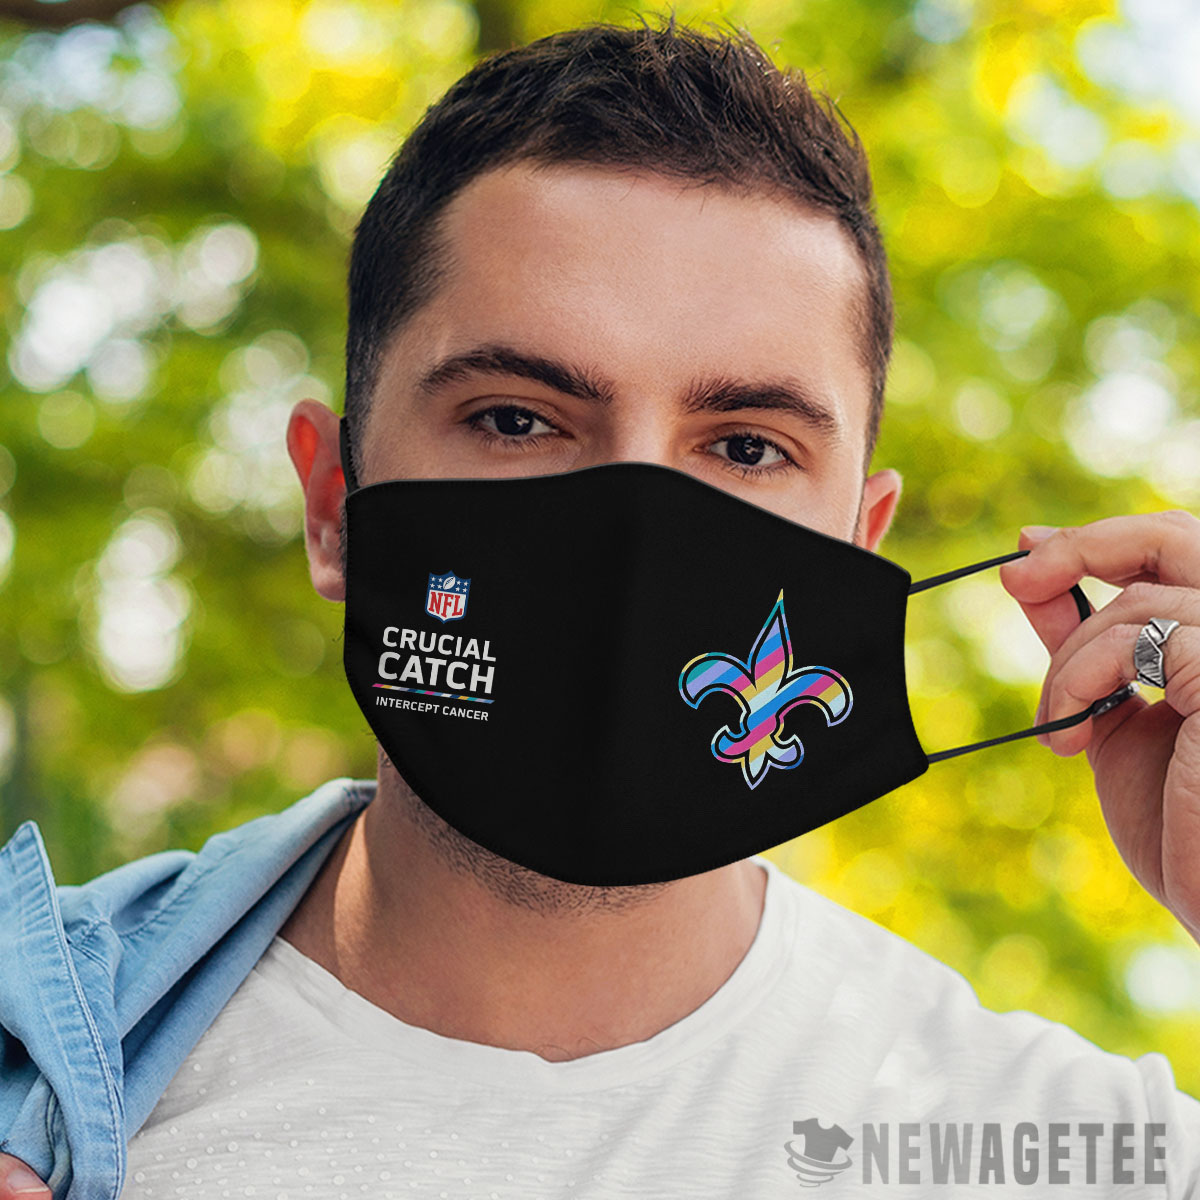 New Orleans Saints Nfl Crucial Catch Multicolor Face Mask Cloth Reusable